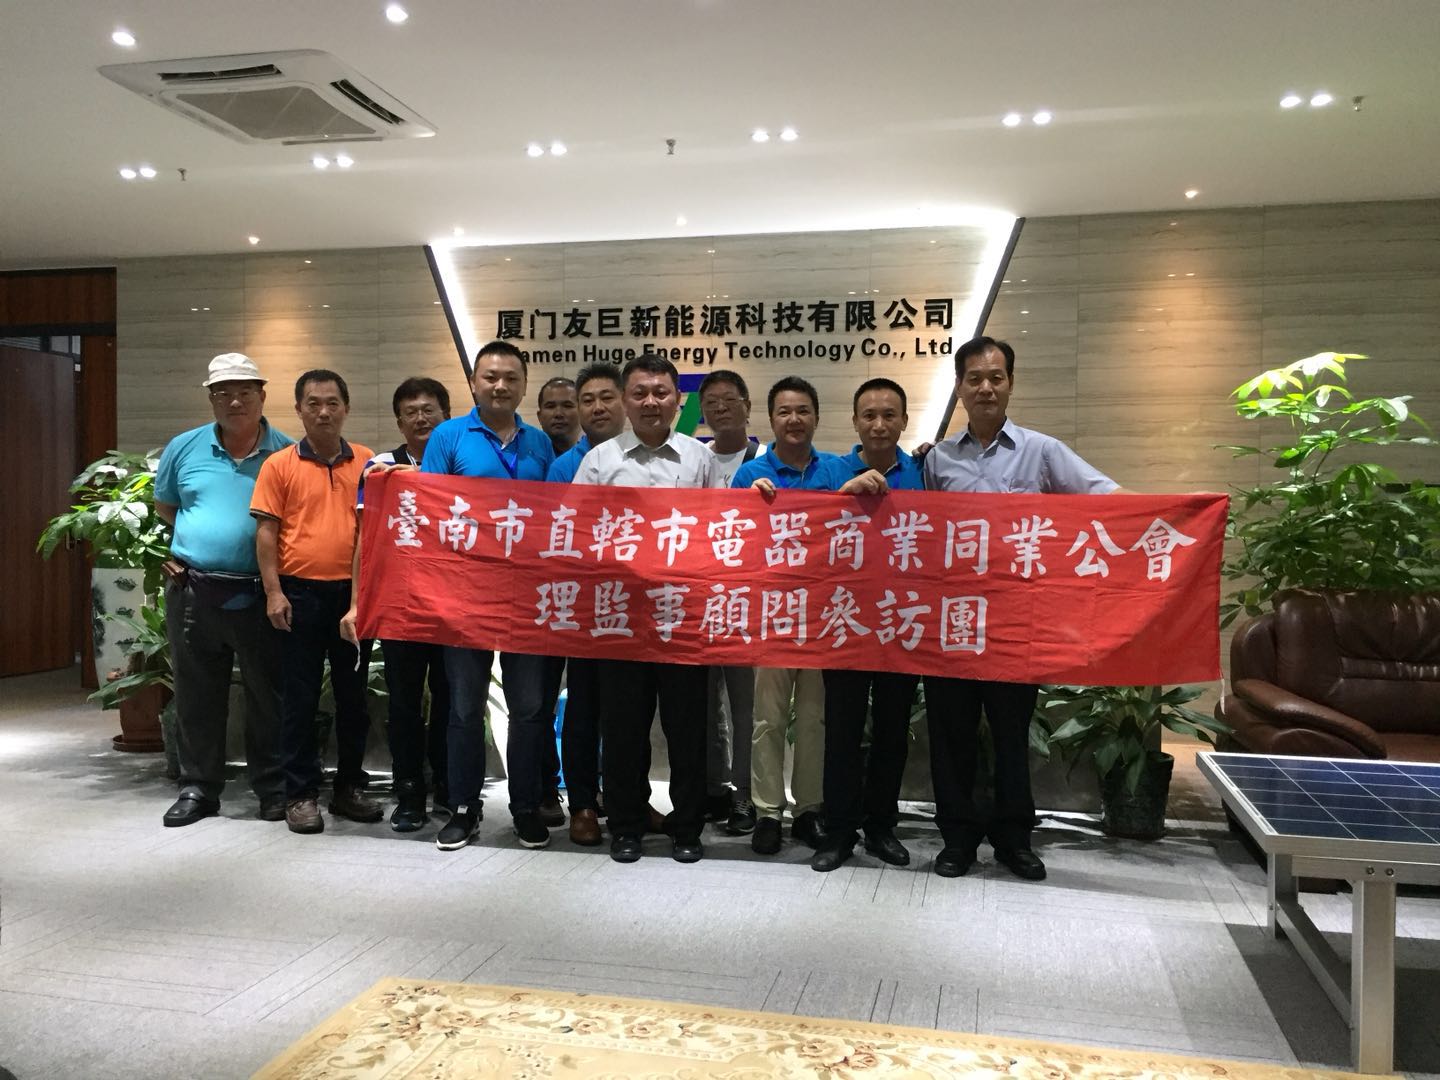 tajwan Tainan wizyta zrzeszenia branżowego zajmującego się urządzeniami elektrycznymi i przywódców komisji ds. ochrony środowiska w Tajwanie